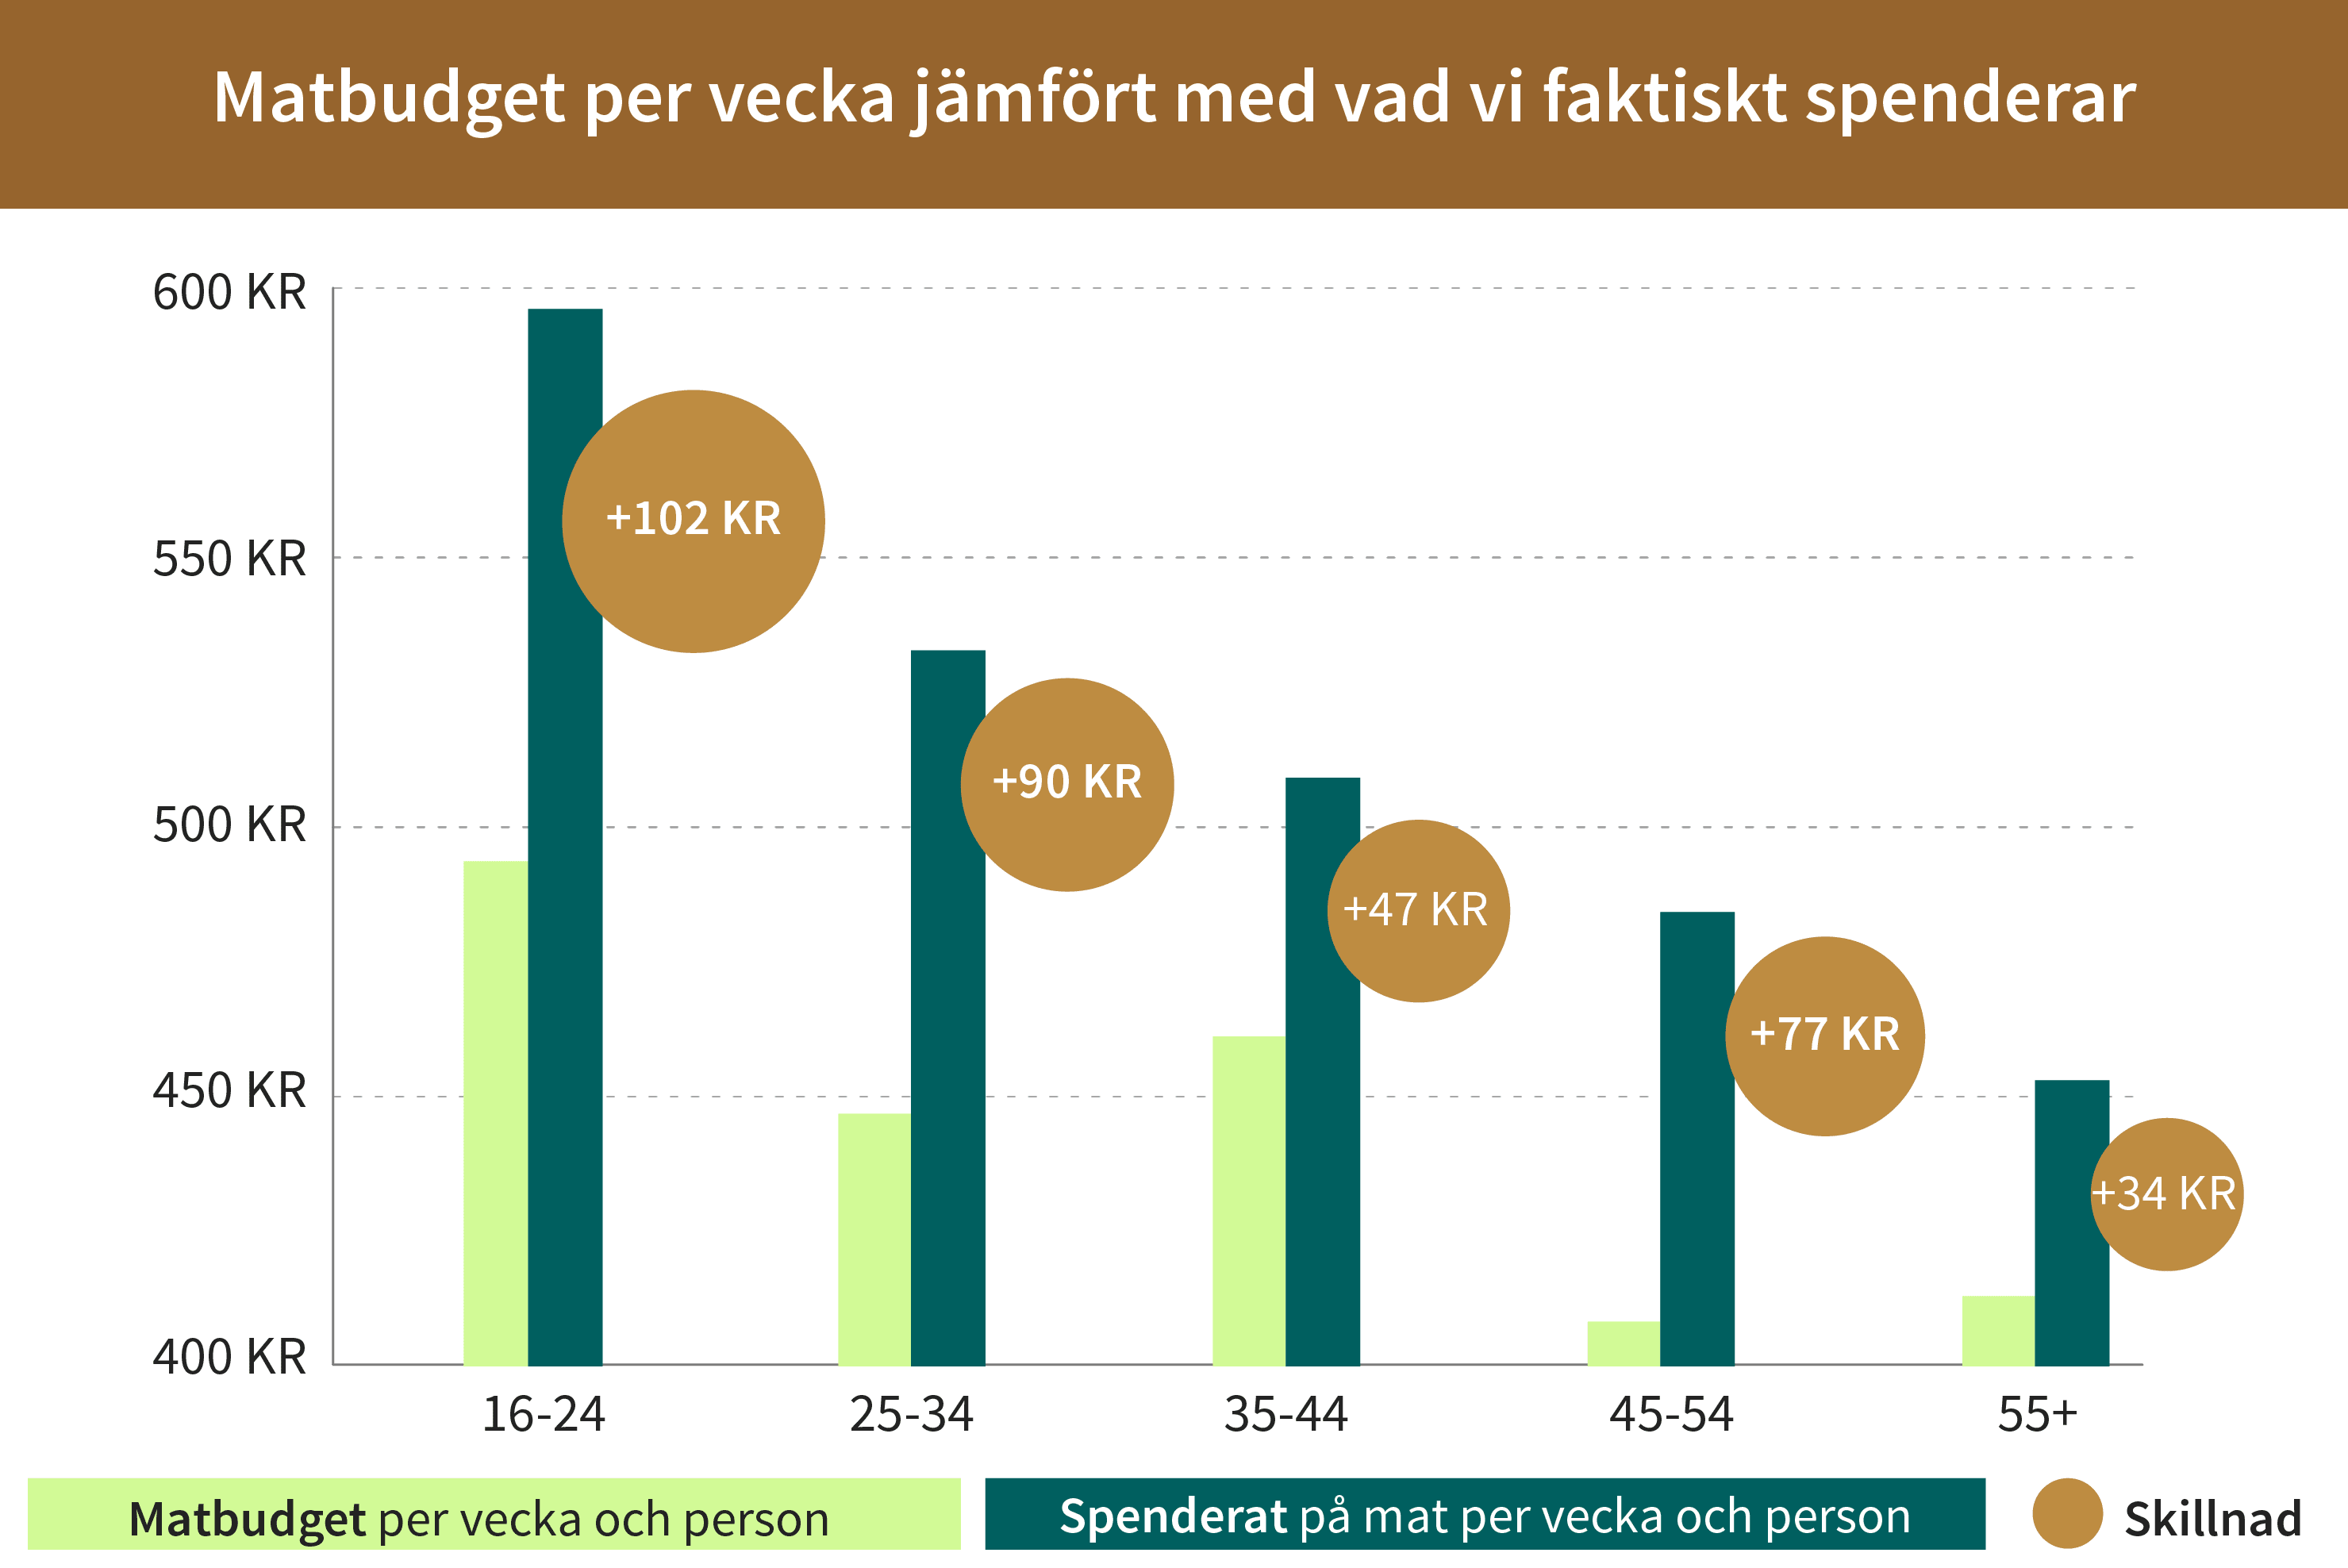 Svensken spenderar 518 kr per vecka på mat